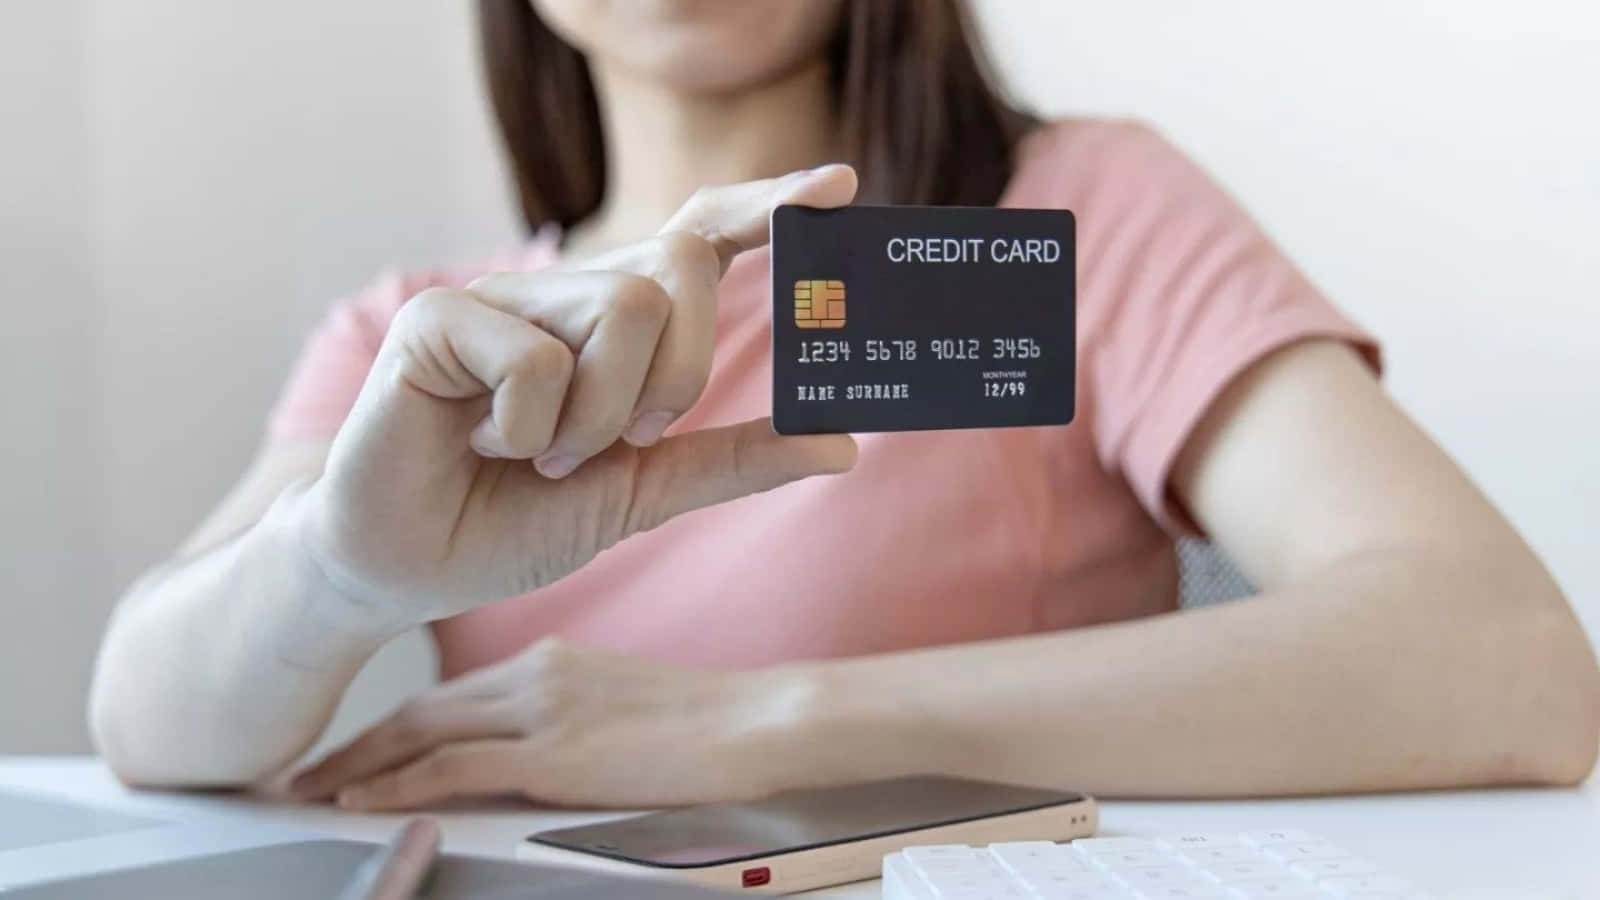 Enkvinna Håller Upp Ett Kreditkort Vid Ett Skrivbord.